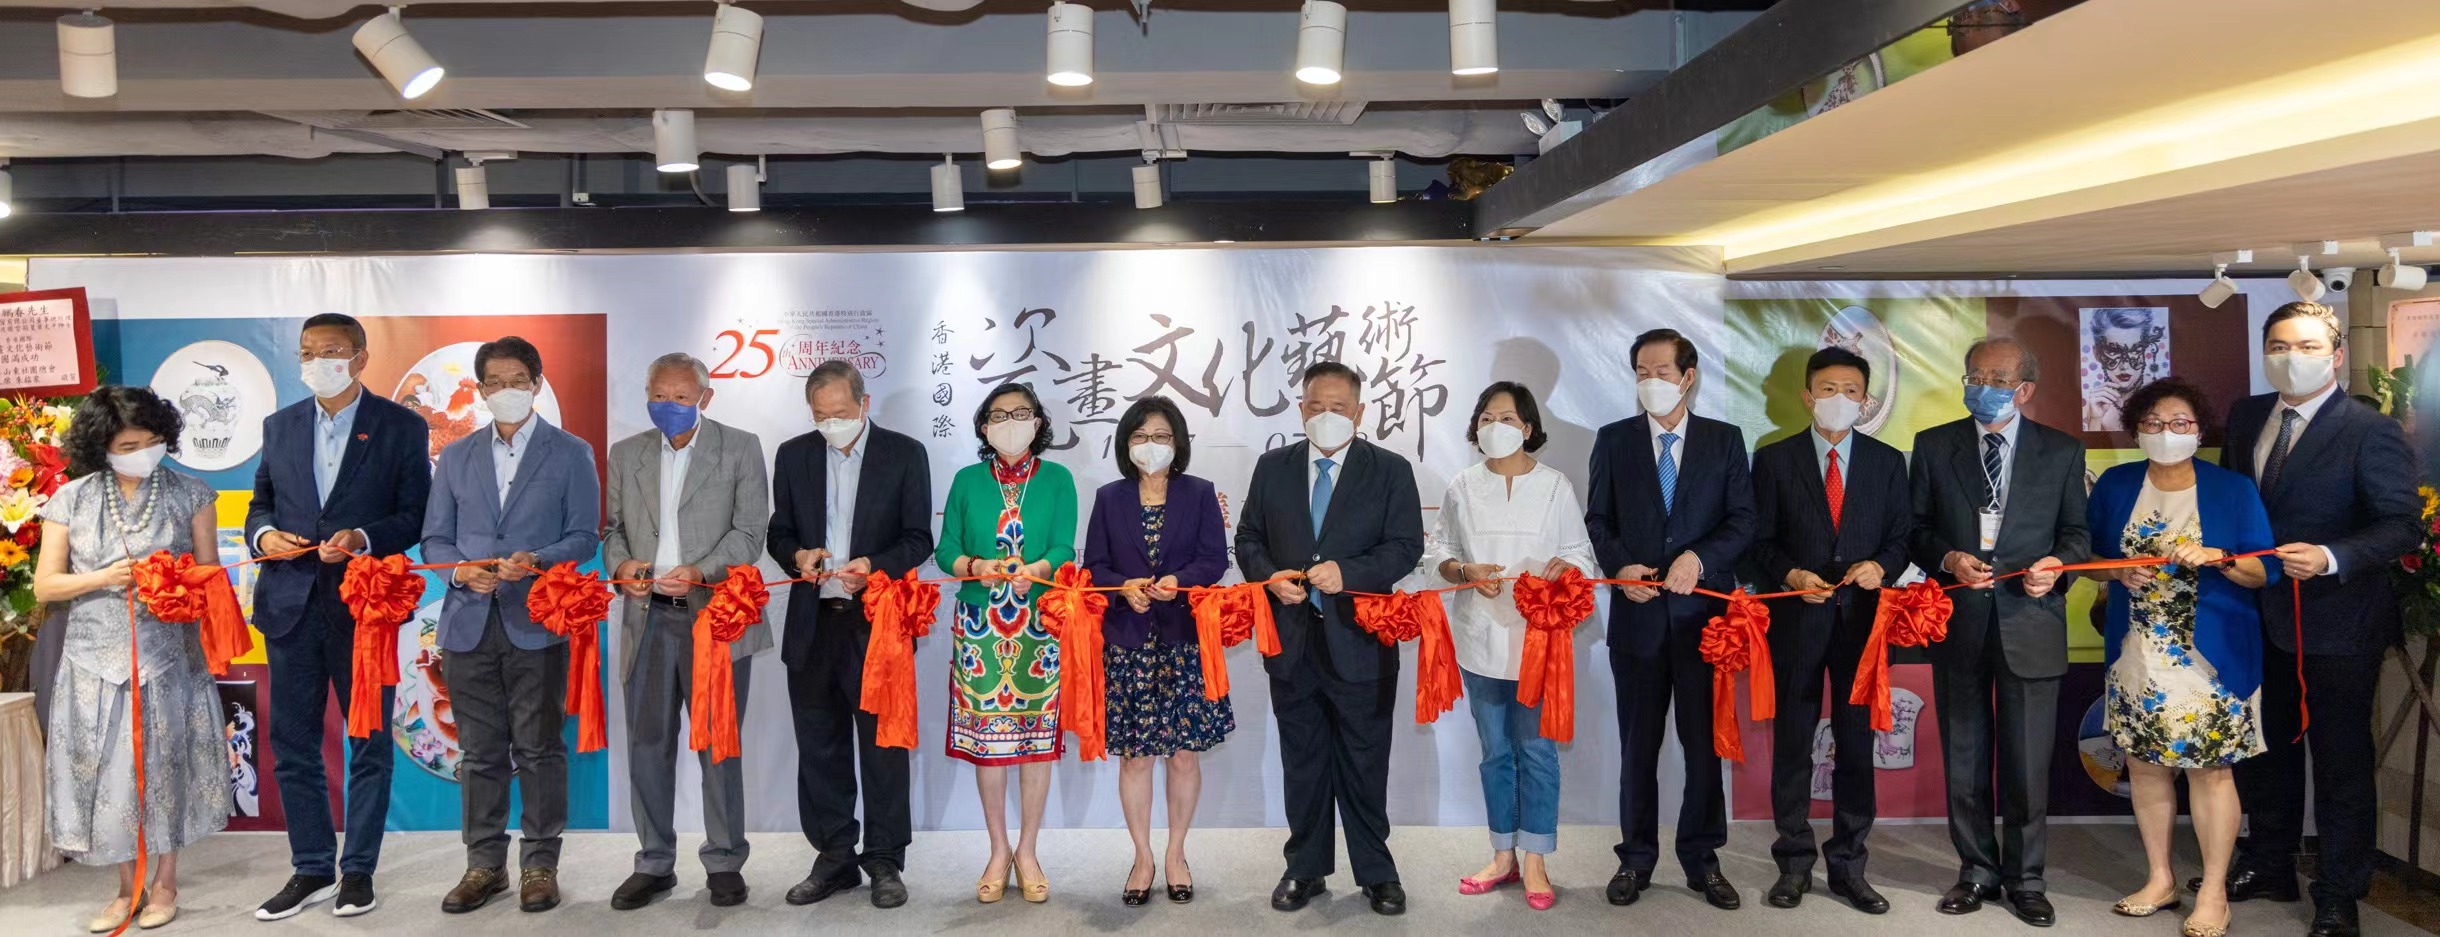 裕華國貨弘揚中華文化 舉辦香港國際瓷畫文化藝術節